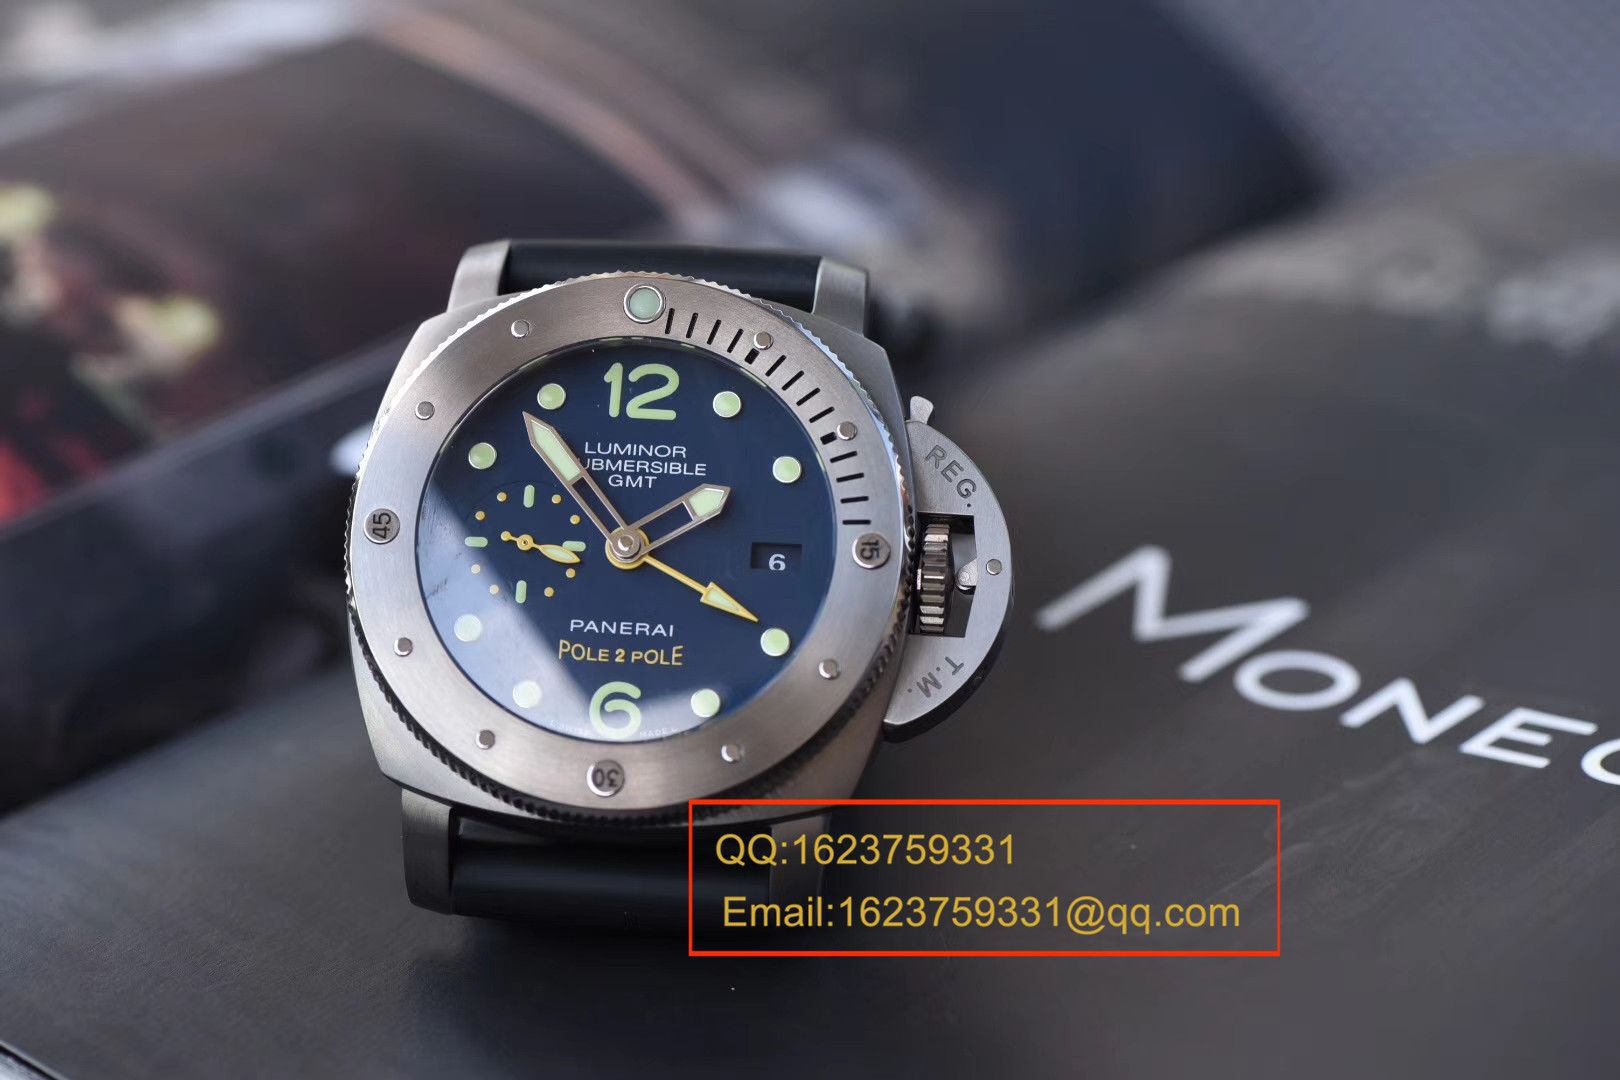 视频评测沛纳海特别版腕表系列PAM00719腕表【VS厂V2最高版本超A高仿手表】 / VS719